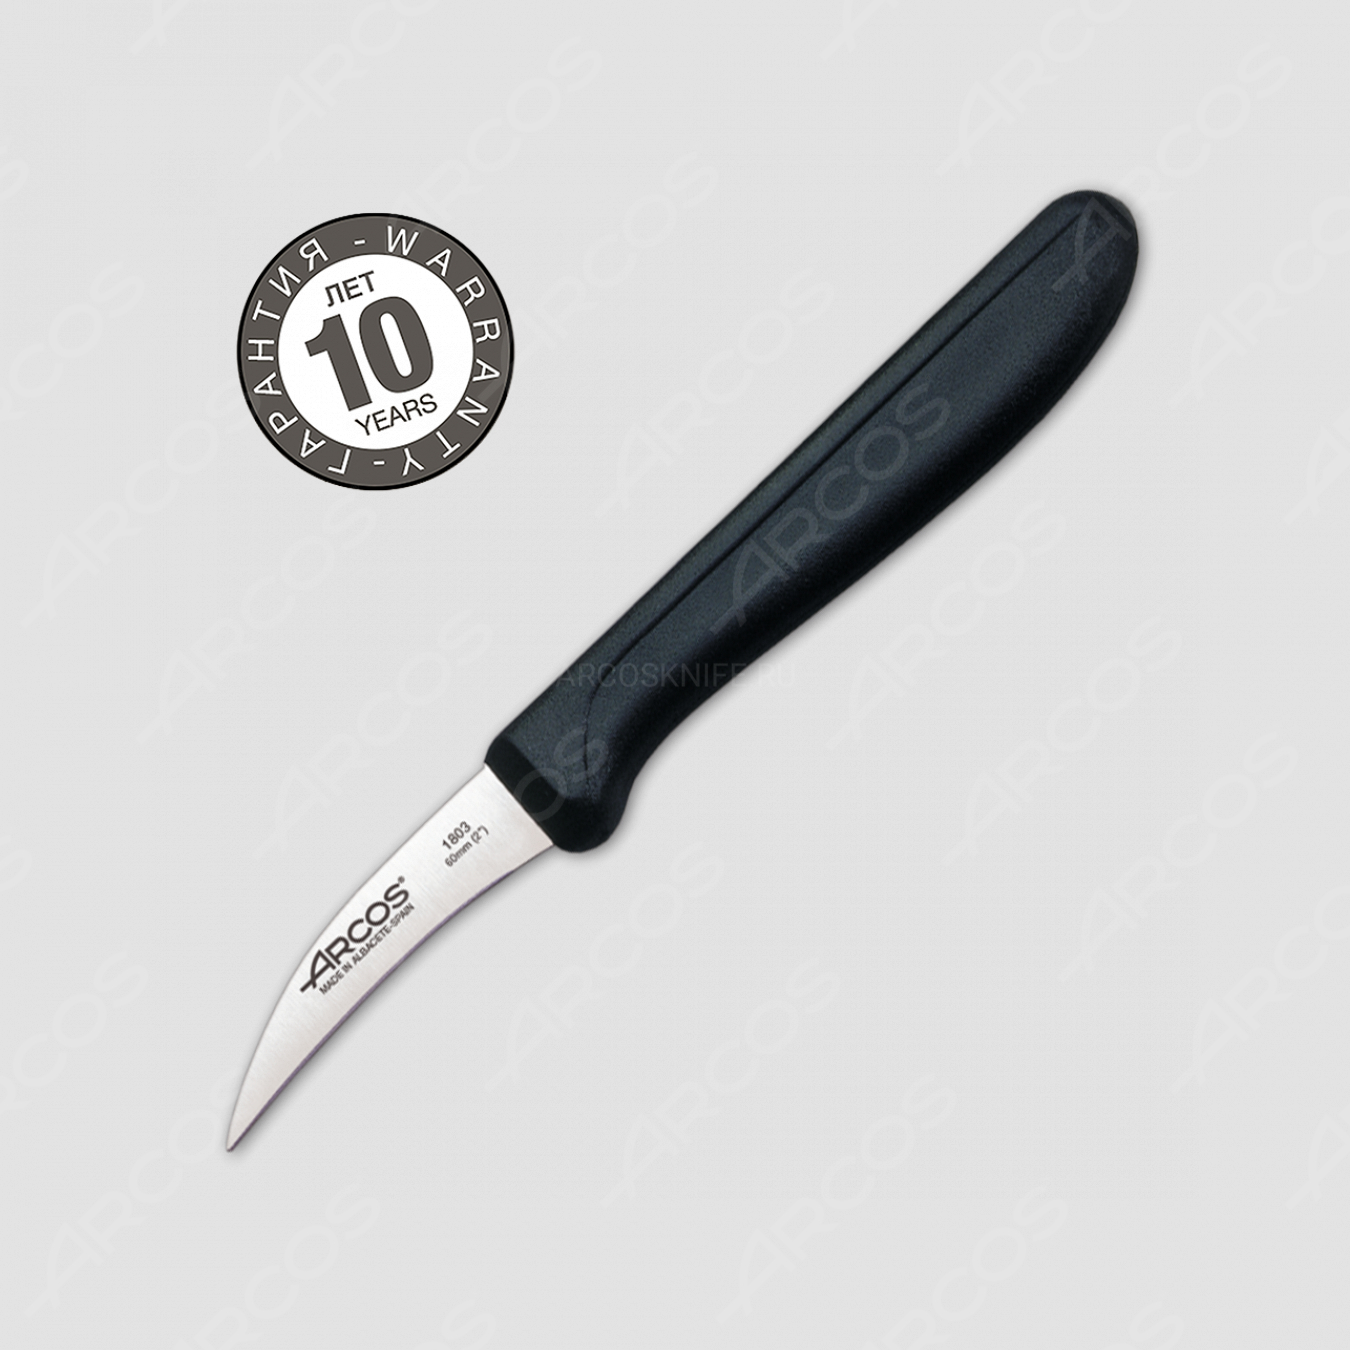 Нож кухонный для чистки 6 см, рукоять черная, серия Genova, ARCOS, Испания